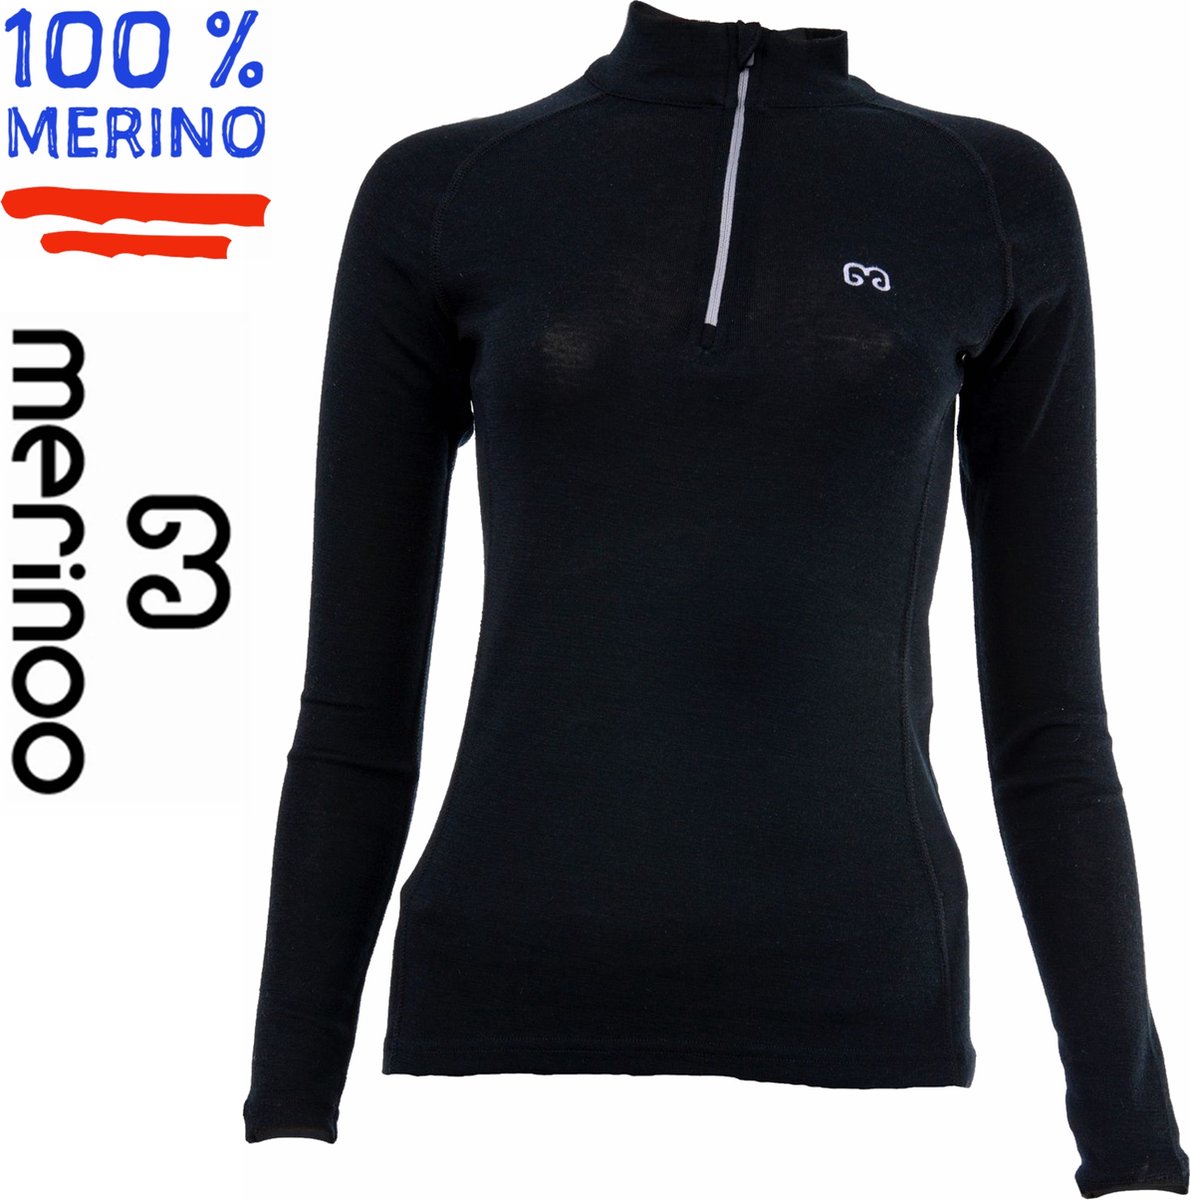 Merinoo 200 - Dames thermoshirt met kraag en rits (100% merinowol) - XL